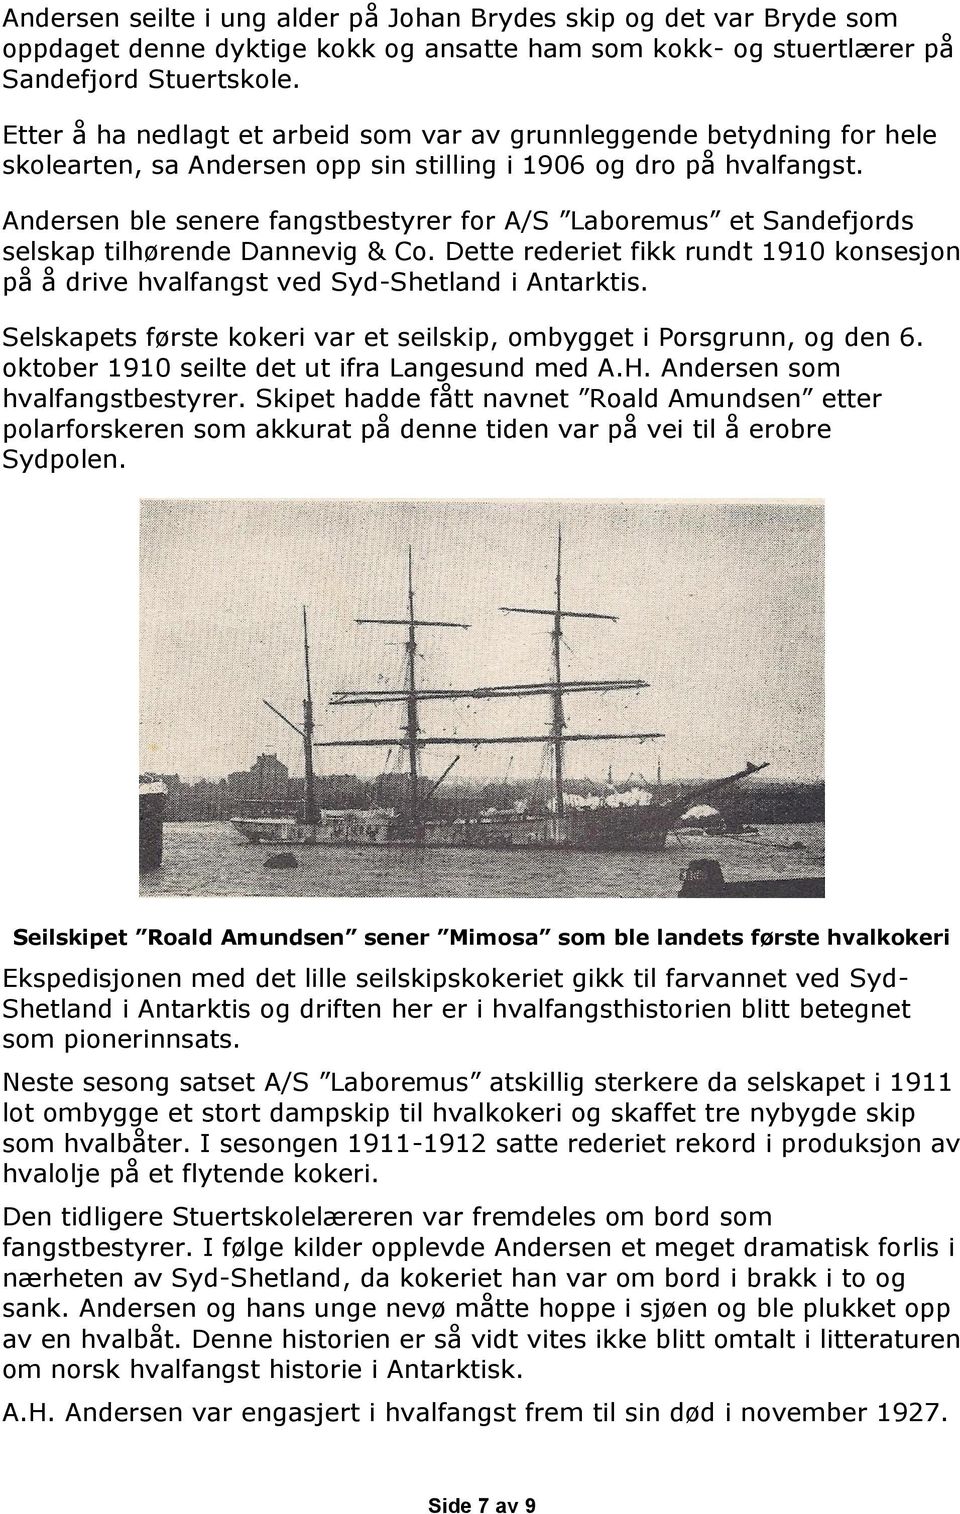 Andersen ble senere fangstbestyrer for A/S Laboremus et Sandefjords selskap tilhørende Dannevig & Co. Dette rederiet fikk rundt 1910 konsesjon på å drive hvalfangst ved Syd-Shetland i Antarktis.